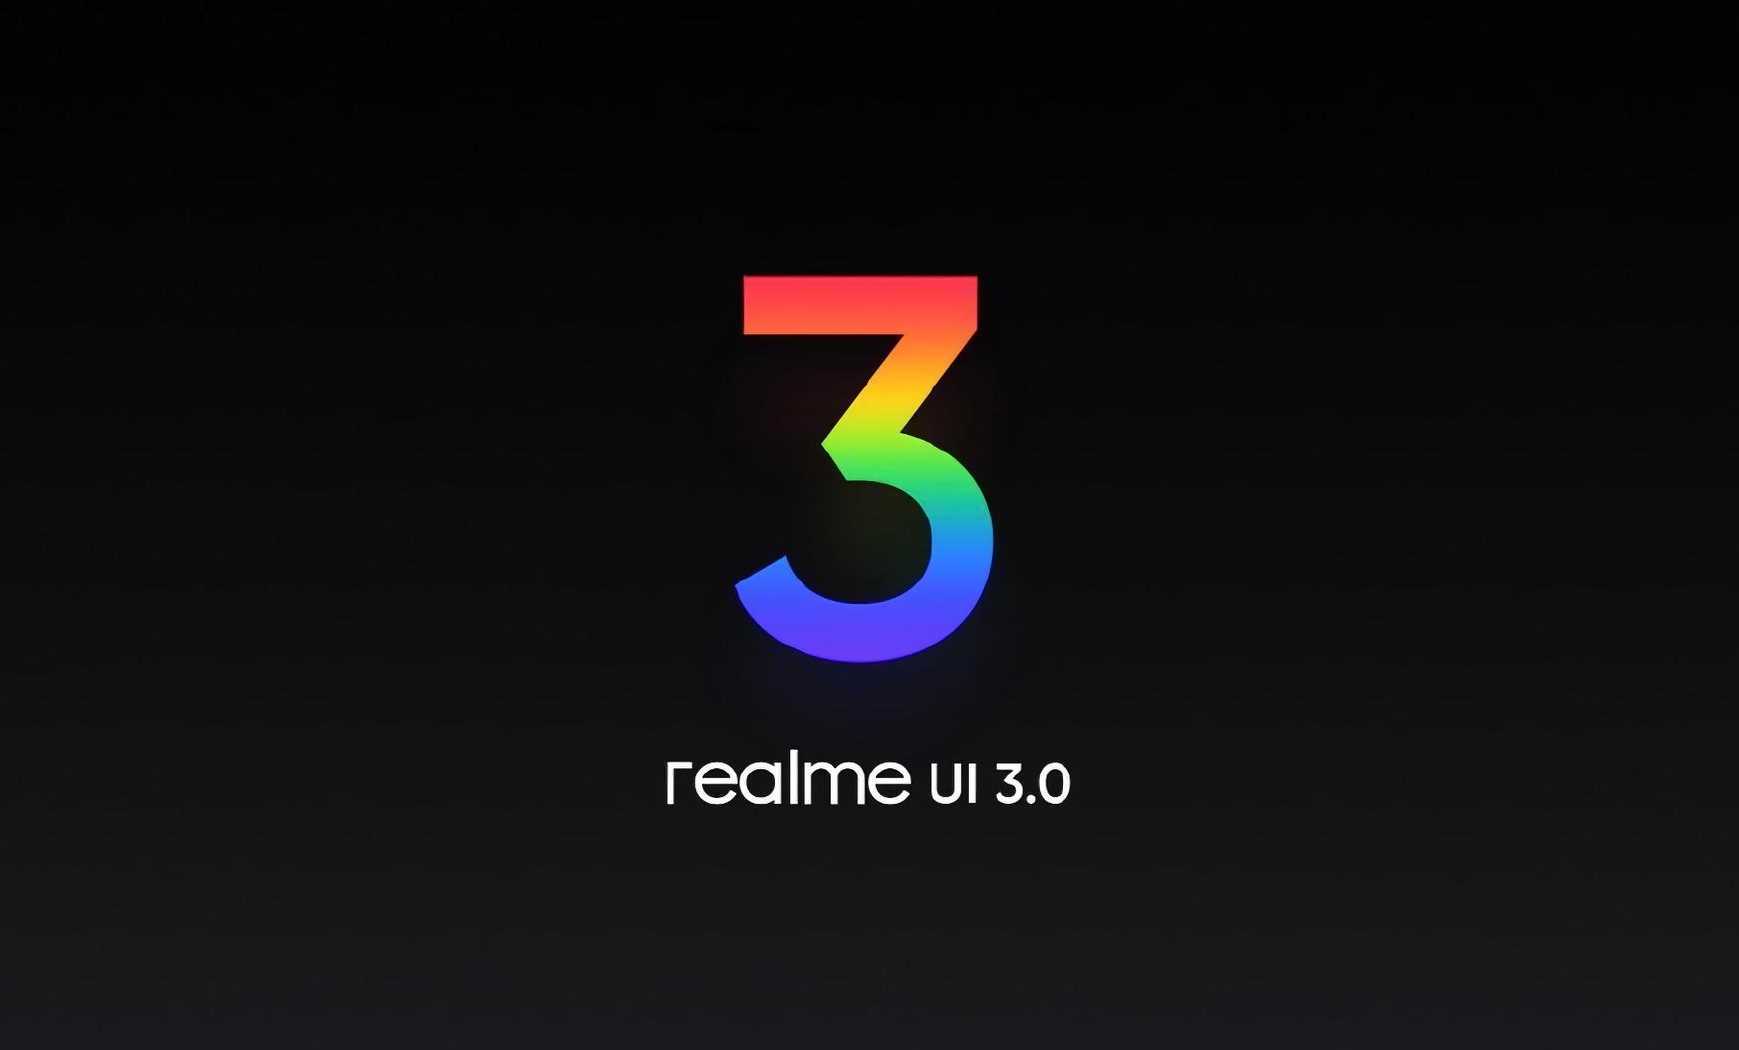 22 смартфони Realme отримають прошивку Realme UI 3.0 - опублікований офіційний список